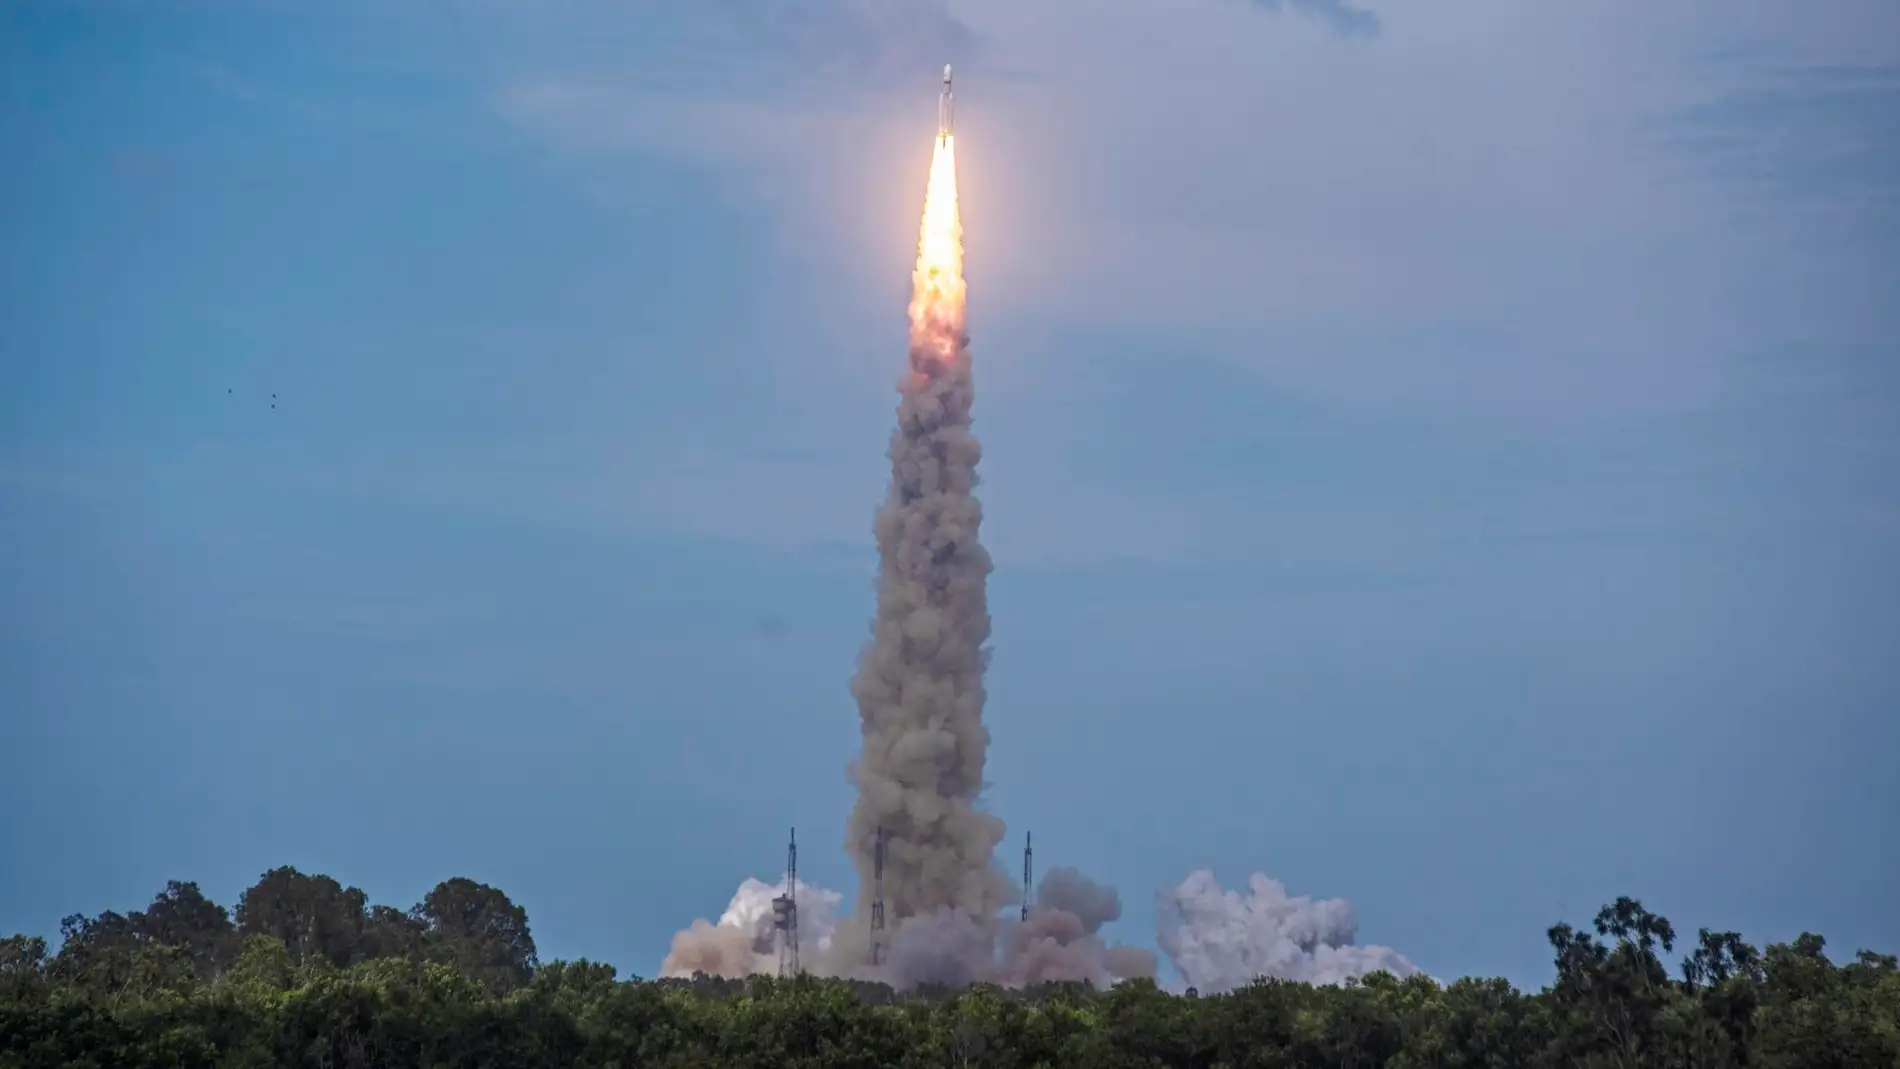 La misión espacial de la India entra en su última fase tras abandonar el propulsor 